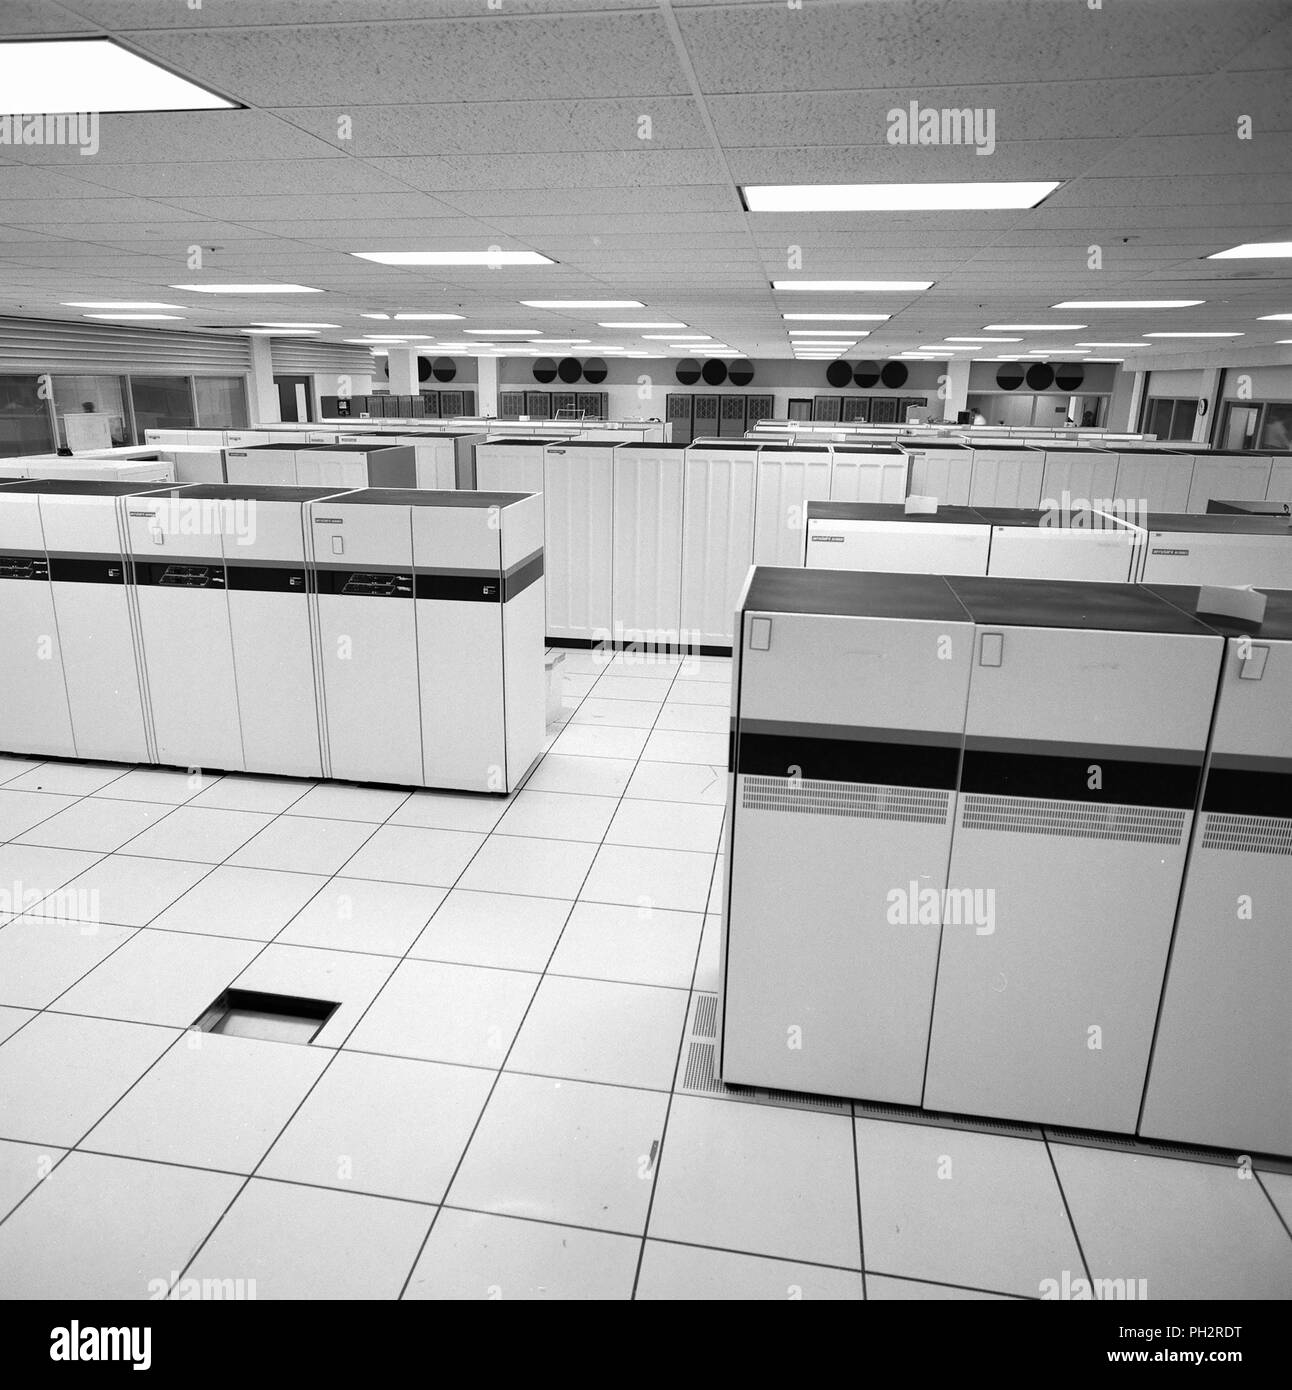 Photographie en noir et blanc de l'intérieur d'une salle informatique Installation NAS, avec des rangées de supercalculateurs, et avec des conduits de refroidissement évident dans le sol et les murs, situé dans le bâtiment N-258, dans la Silicon Valley, Mountain View, Californie, 1987. Avec la permission des Archives Internet/NASA Ames. () Banque D'Images